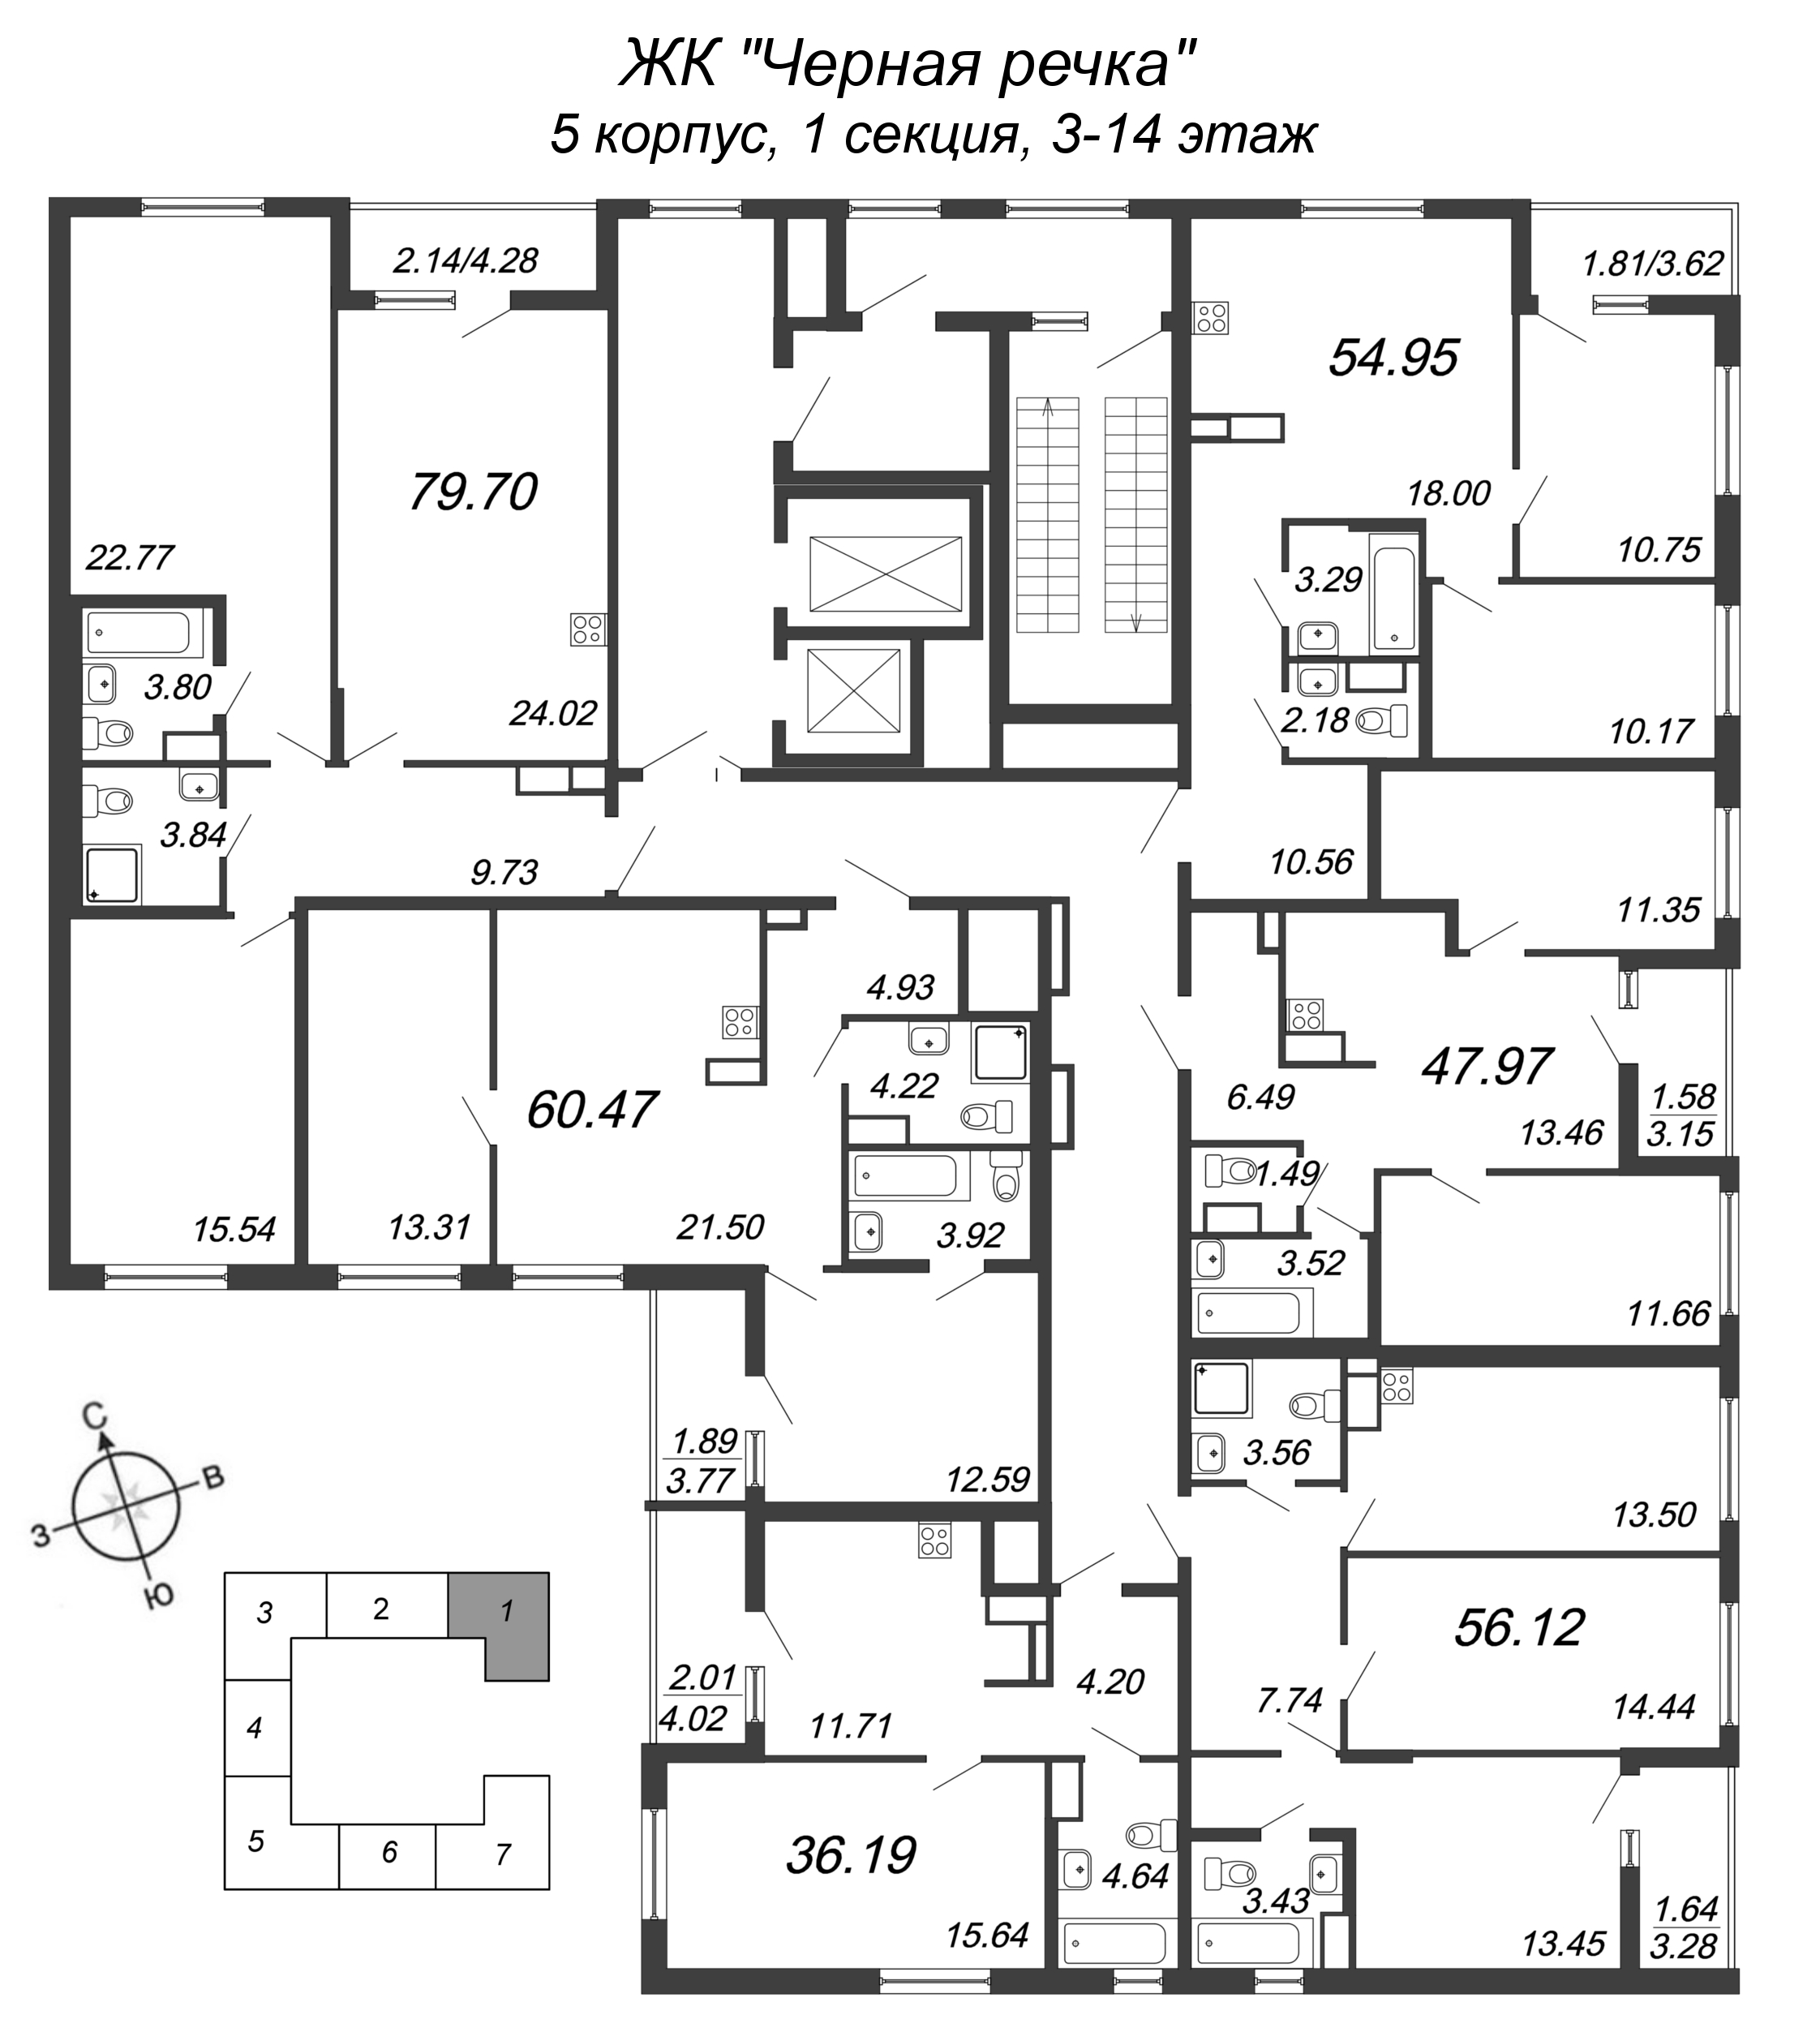 3-комнатная (Евро) квартира, 47.97 м² в ЖК "Чёрная речка" - планировка этажа